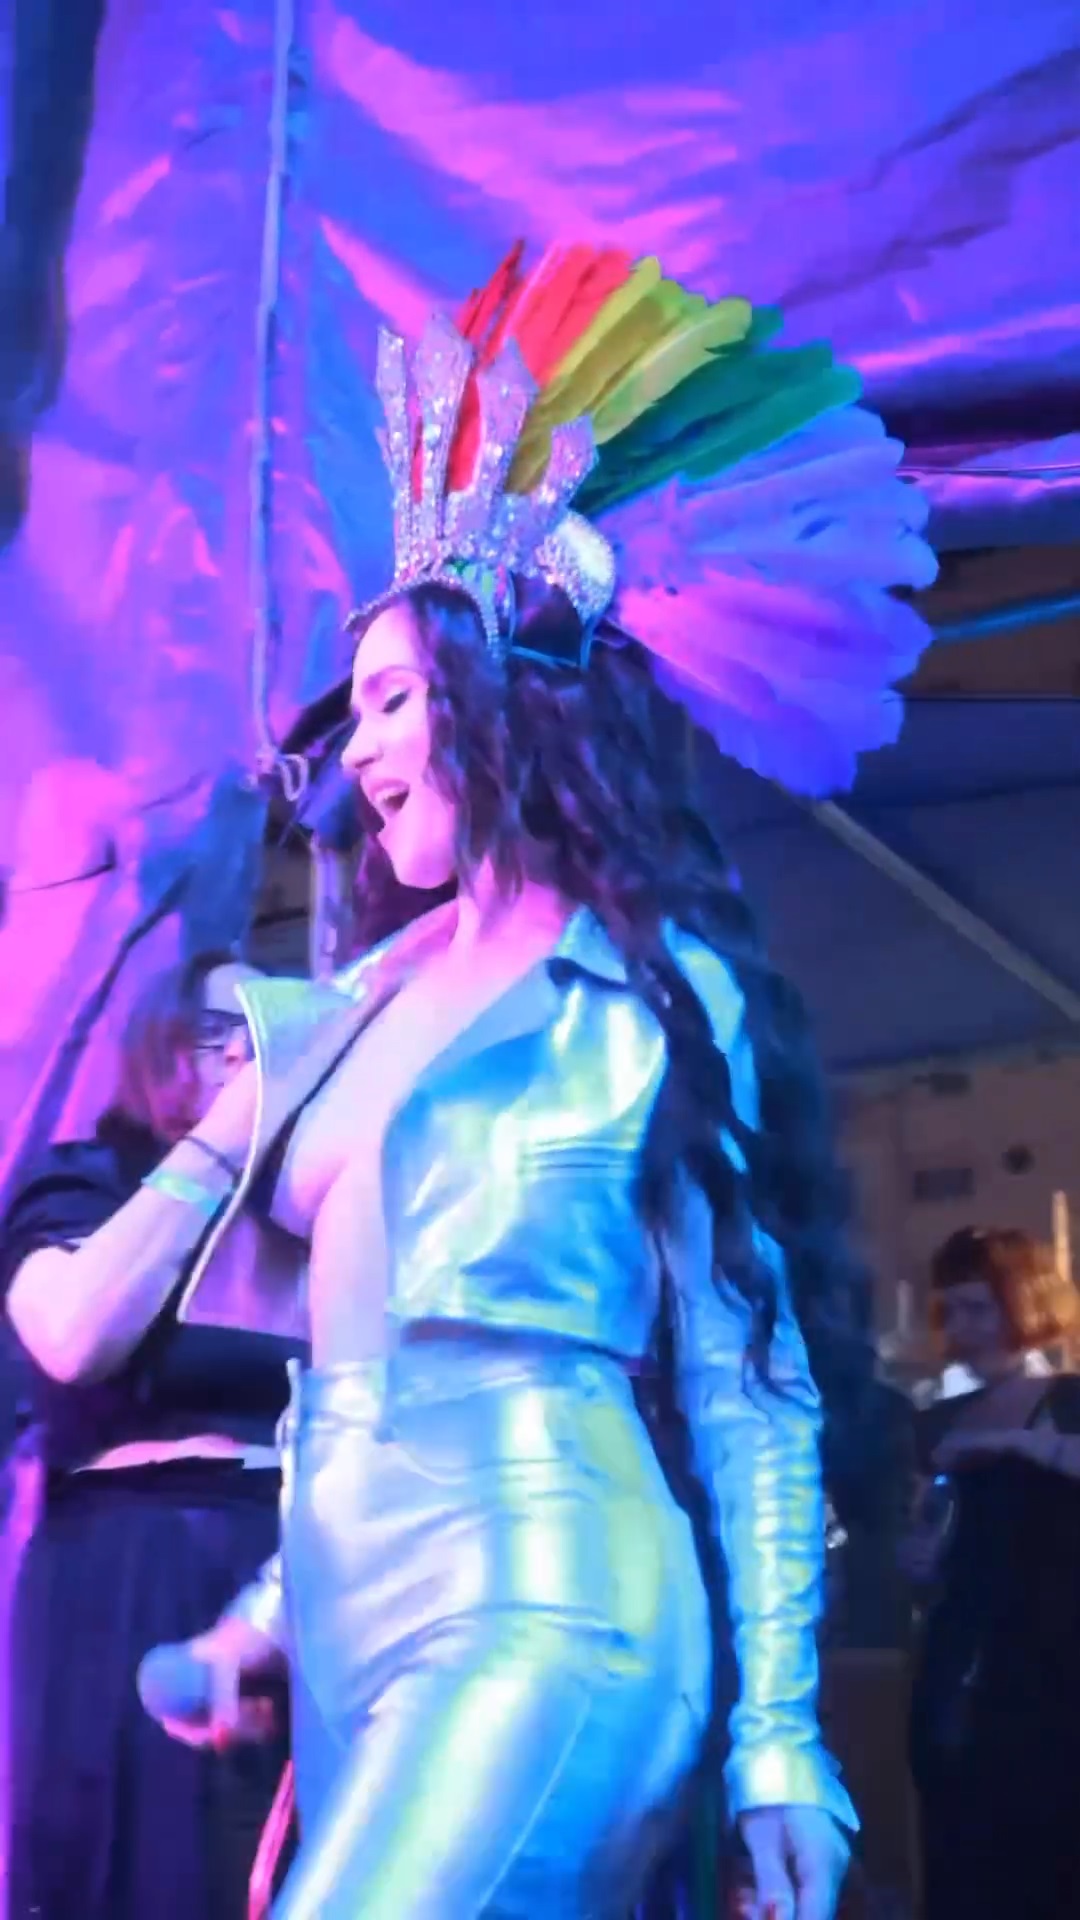 Обнажив грудь, Наталья Орейро зажгла на гей-параде. Топ фото, пока еще гражданки России, горячей Натальи Орейро с радужного мероприятия